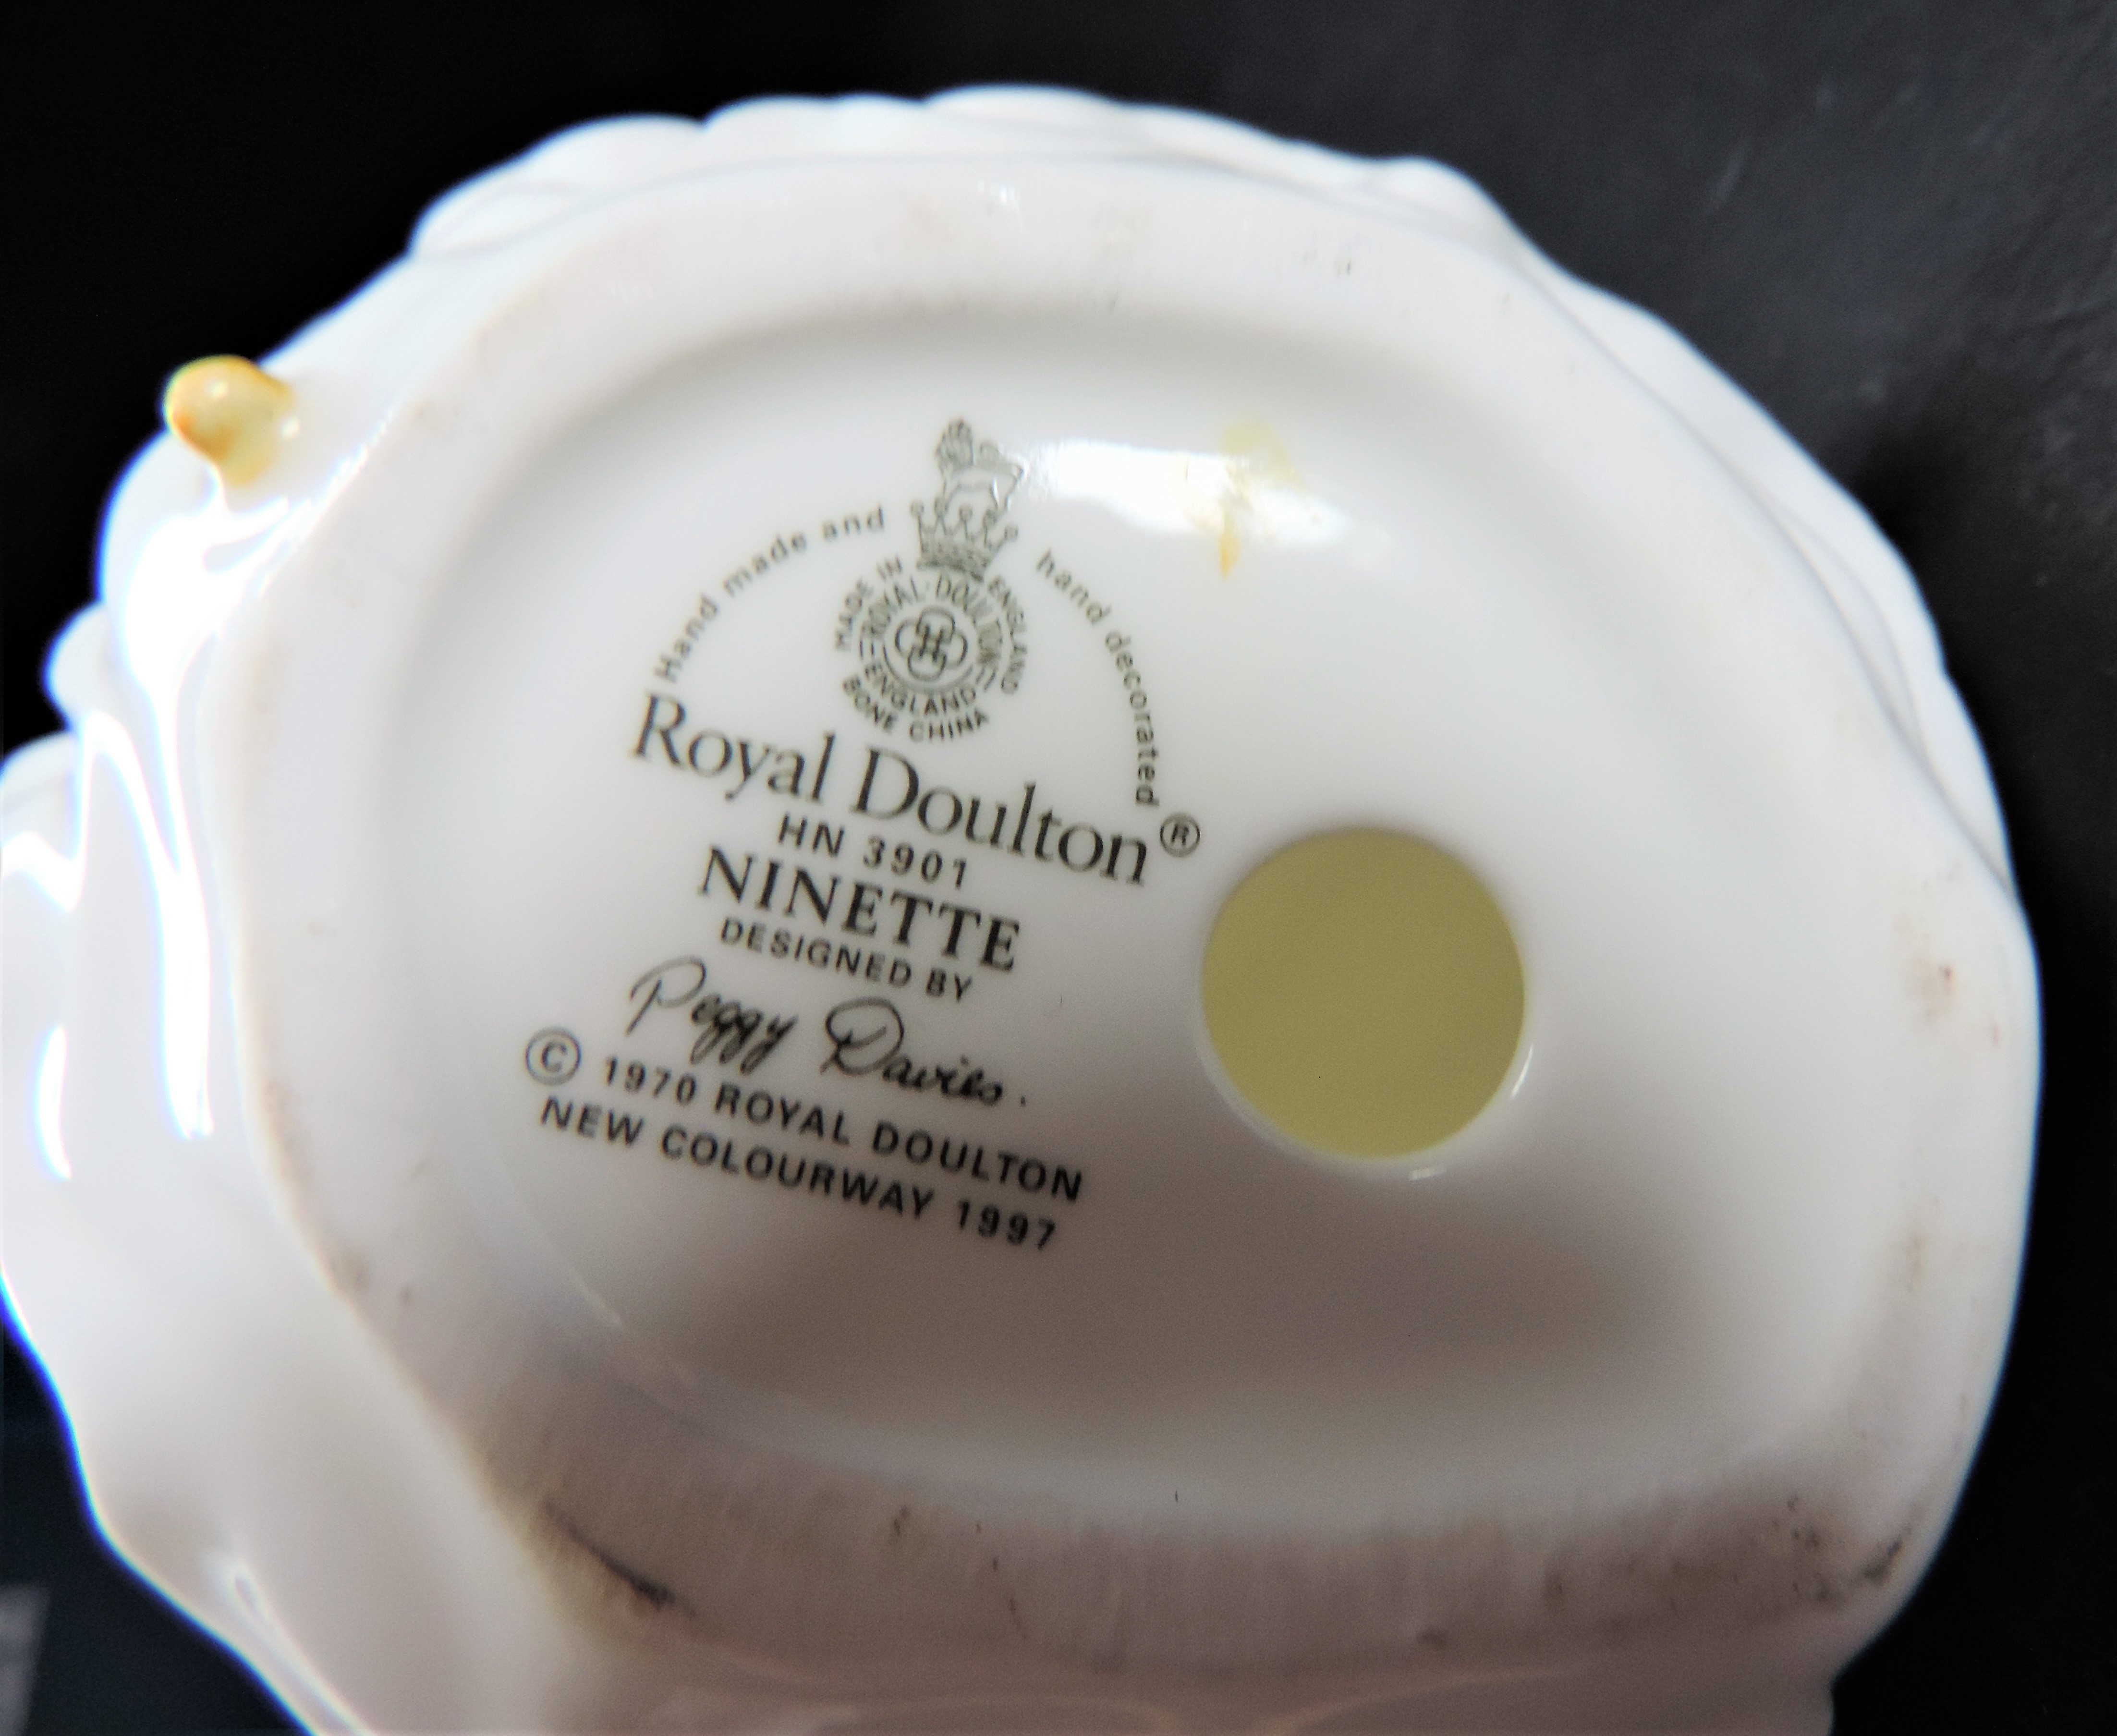 Royal Doulton Porcelain Figurine 'Ninette' - Image 4 of 5